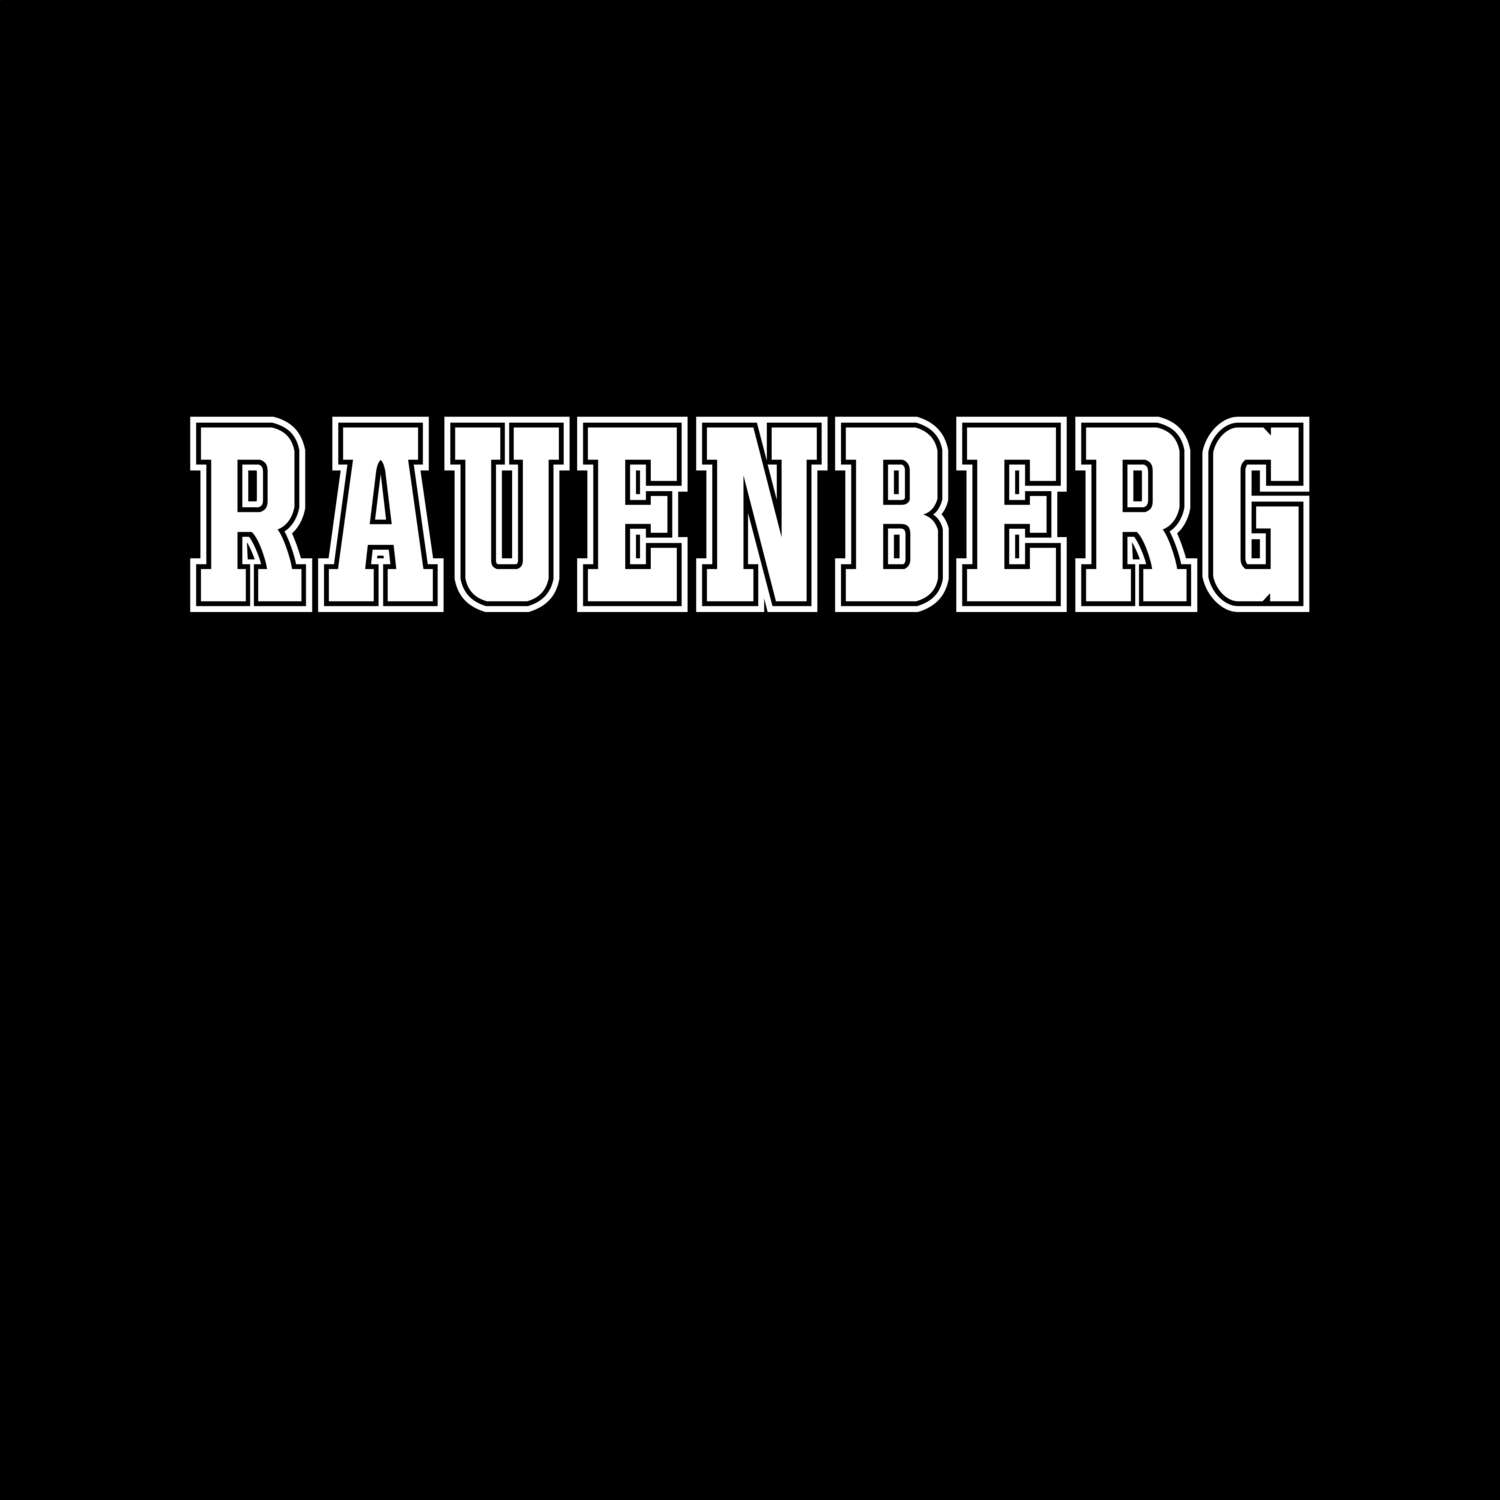 Rauenberg T-Shirt »Classic«